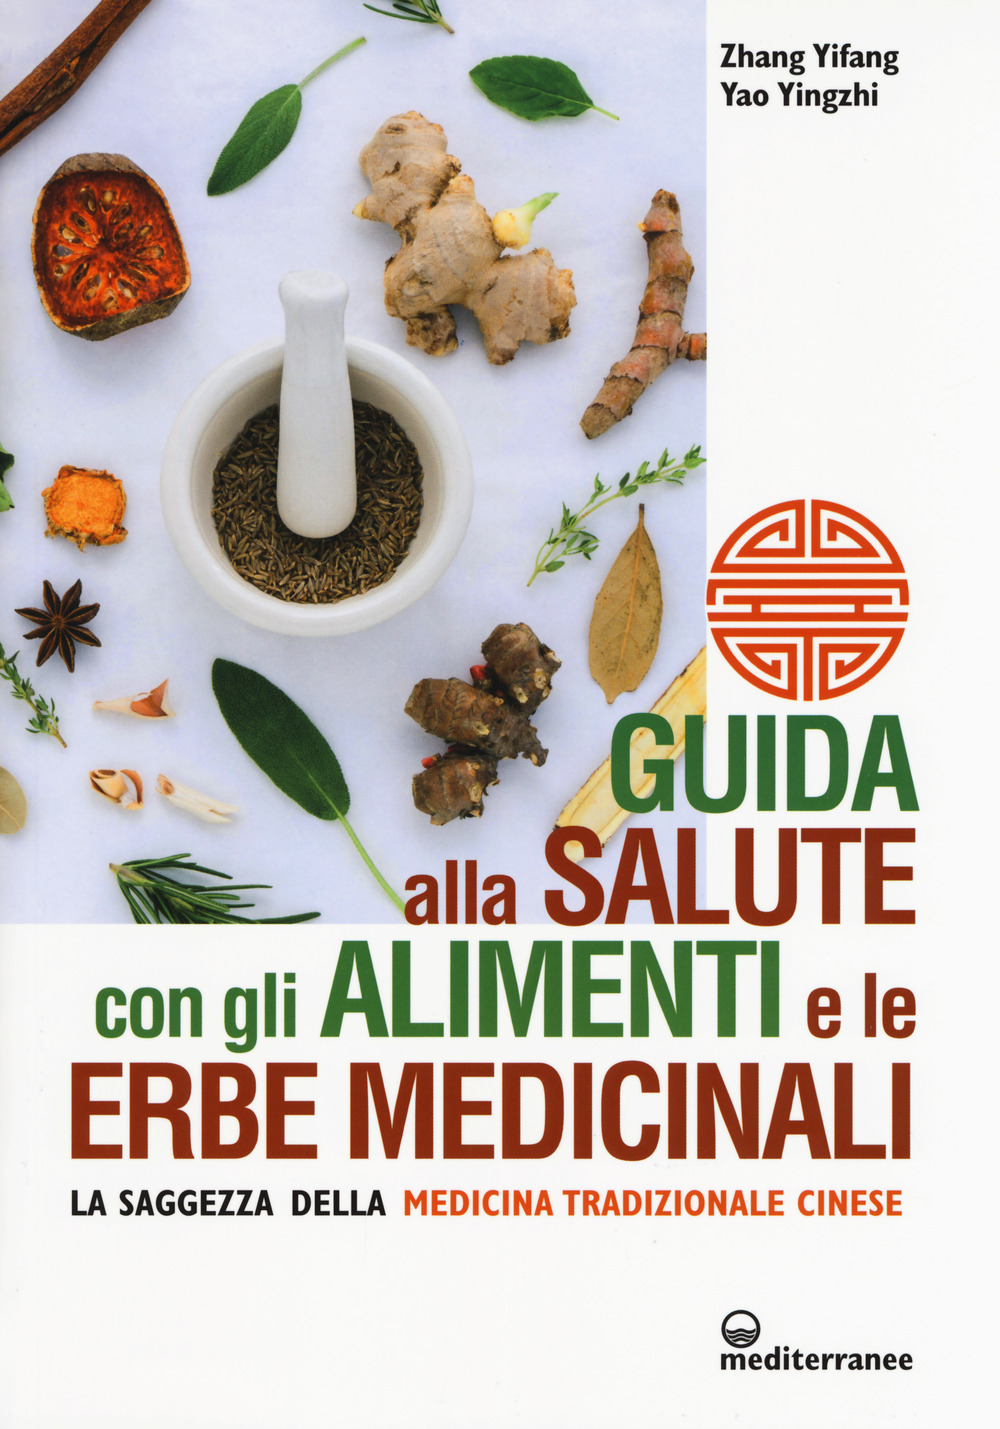 Image of Guida alla salute con gli alimenti e le erbe medicinali. La saggezza della medicina cinese